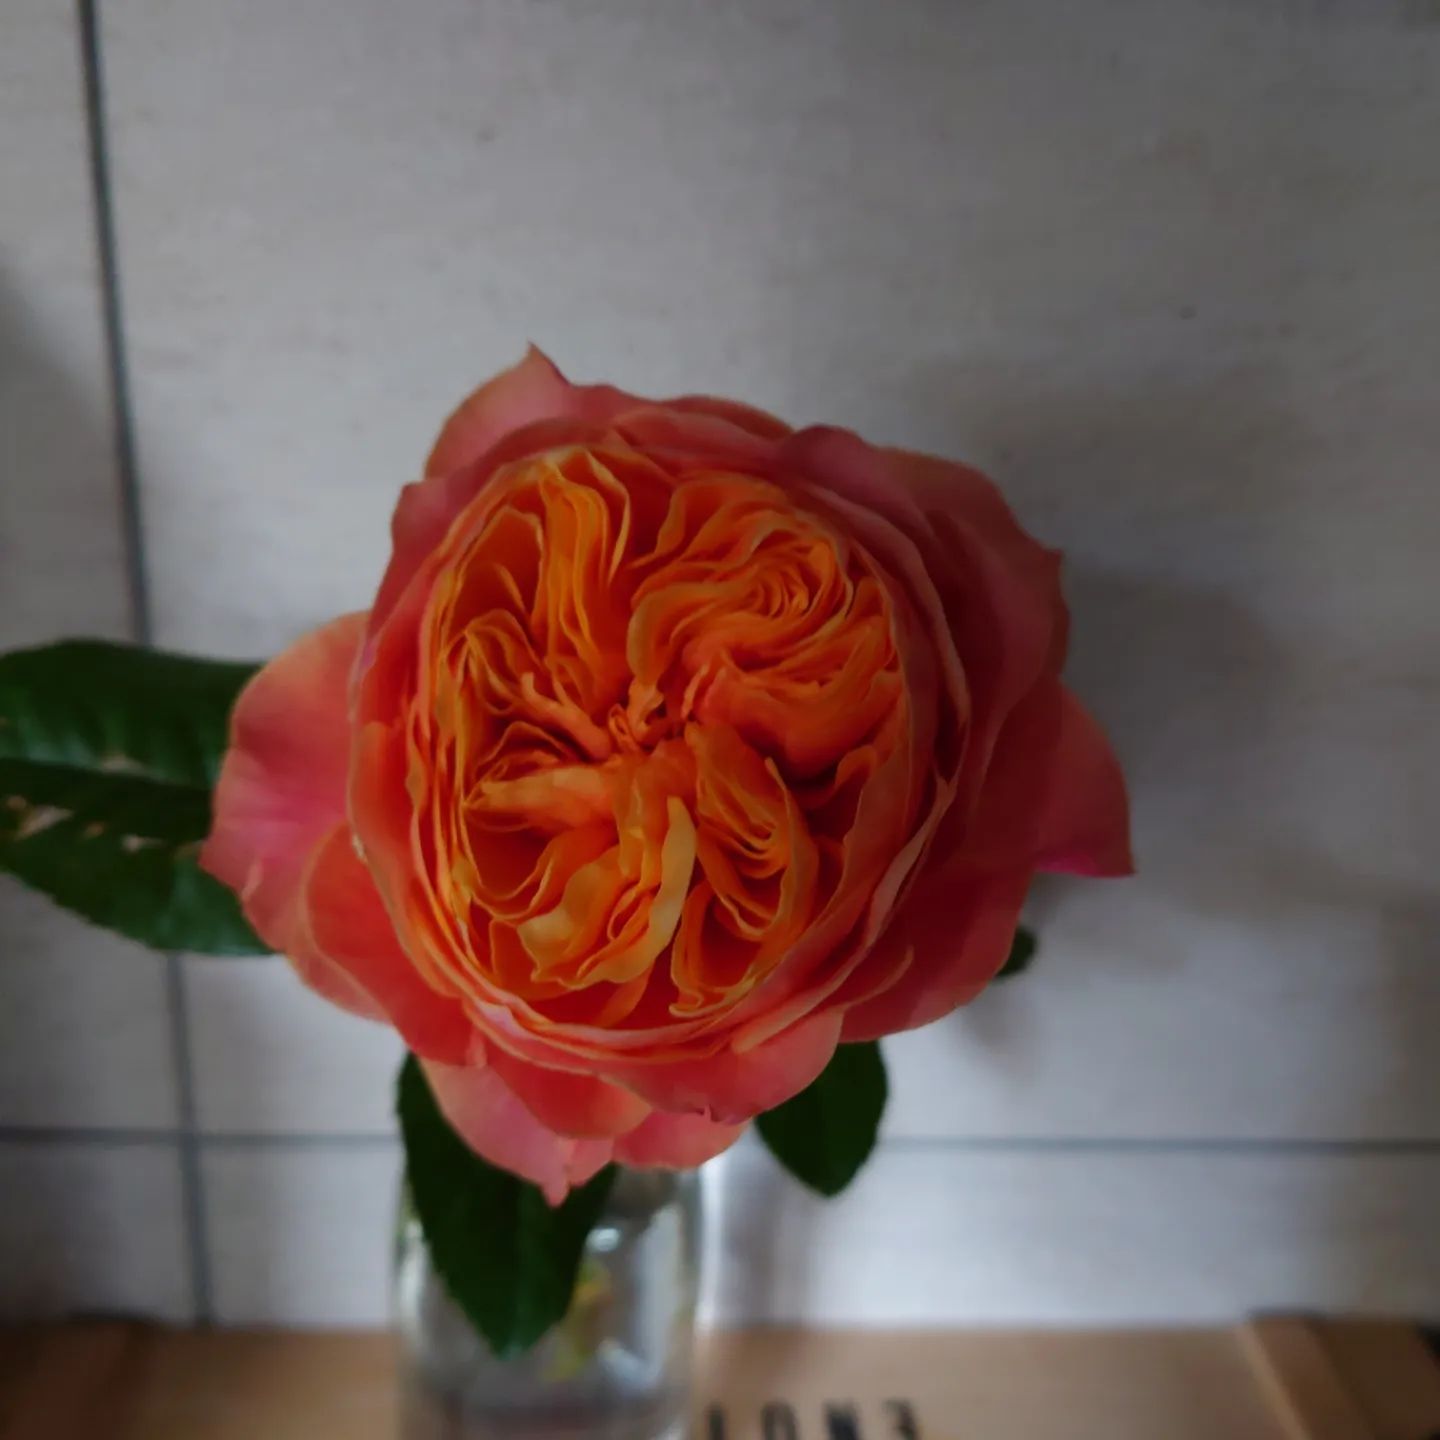 Orange Rose of rosette form kind 2023